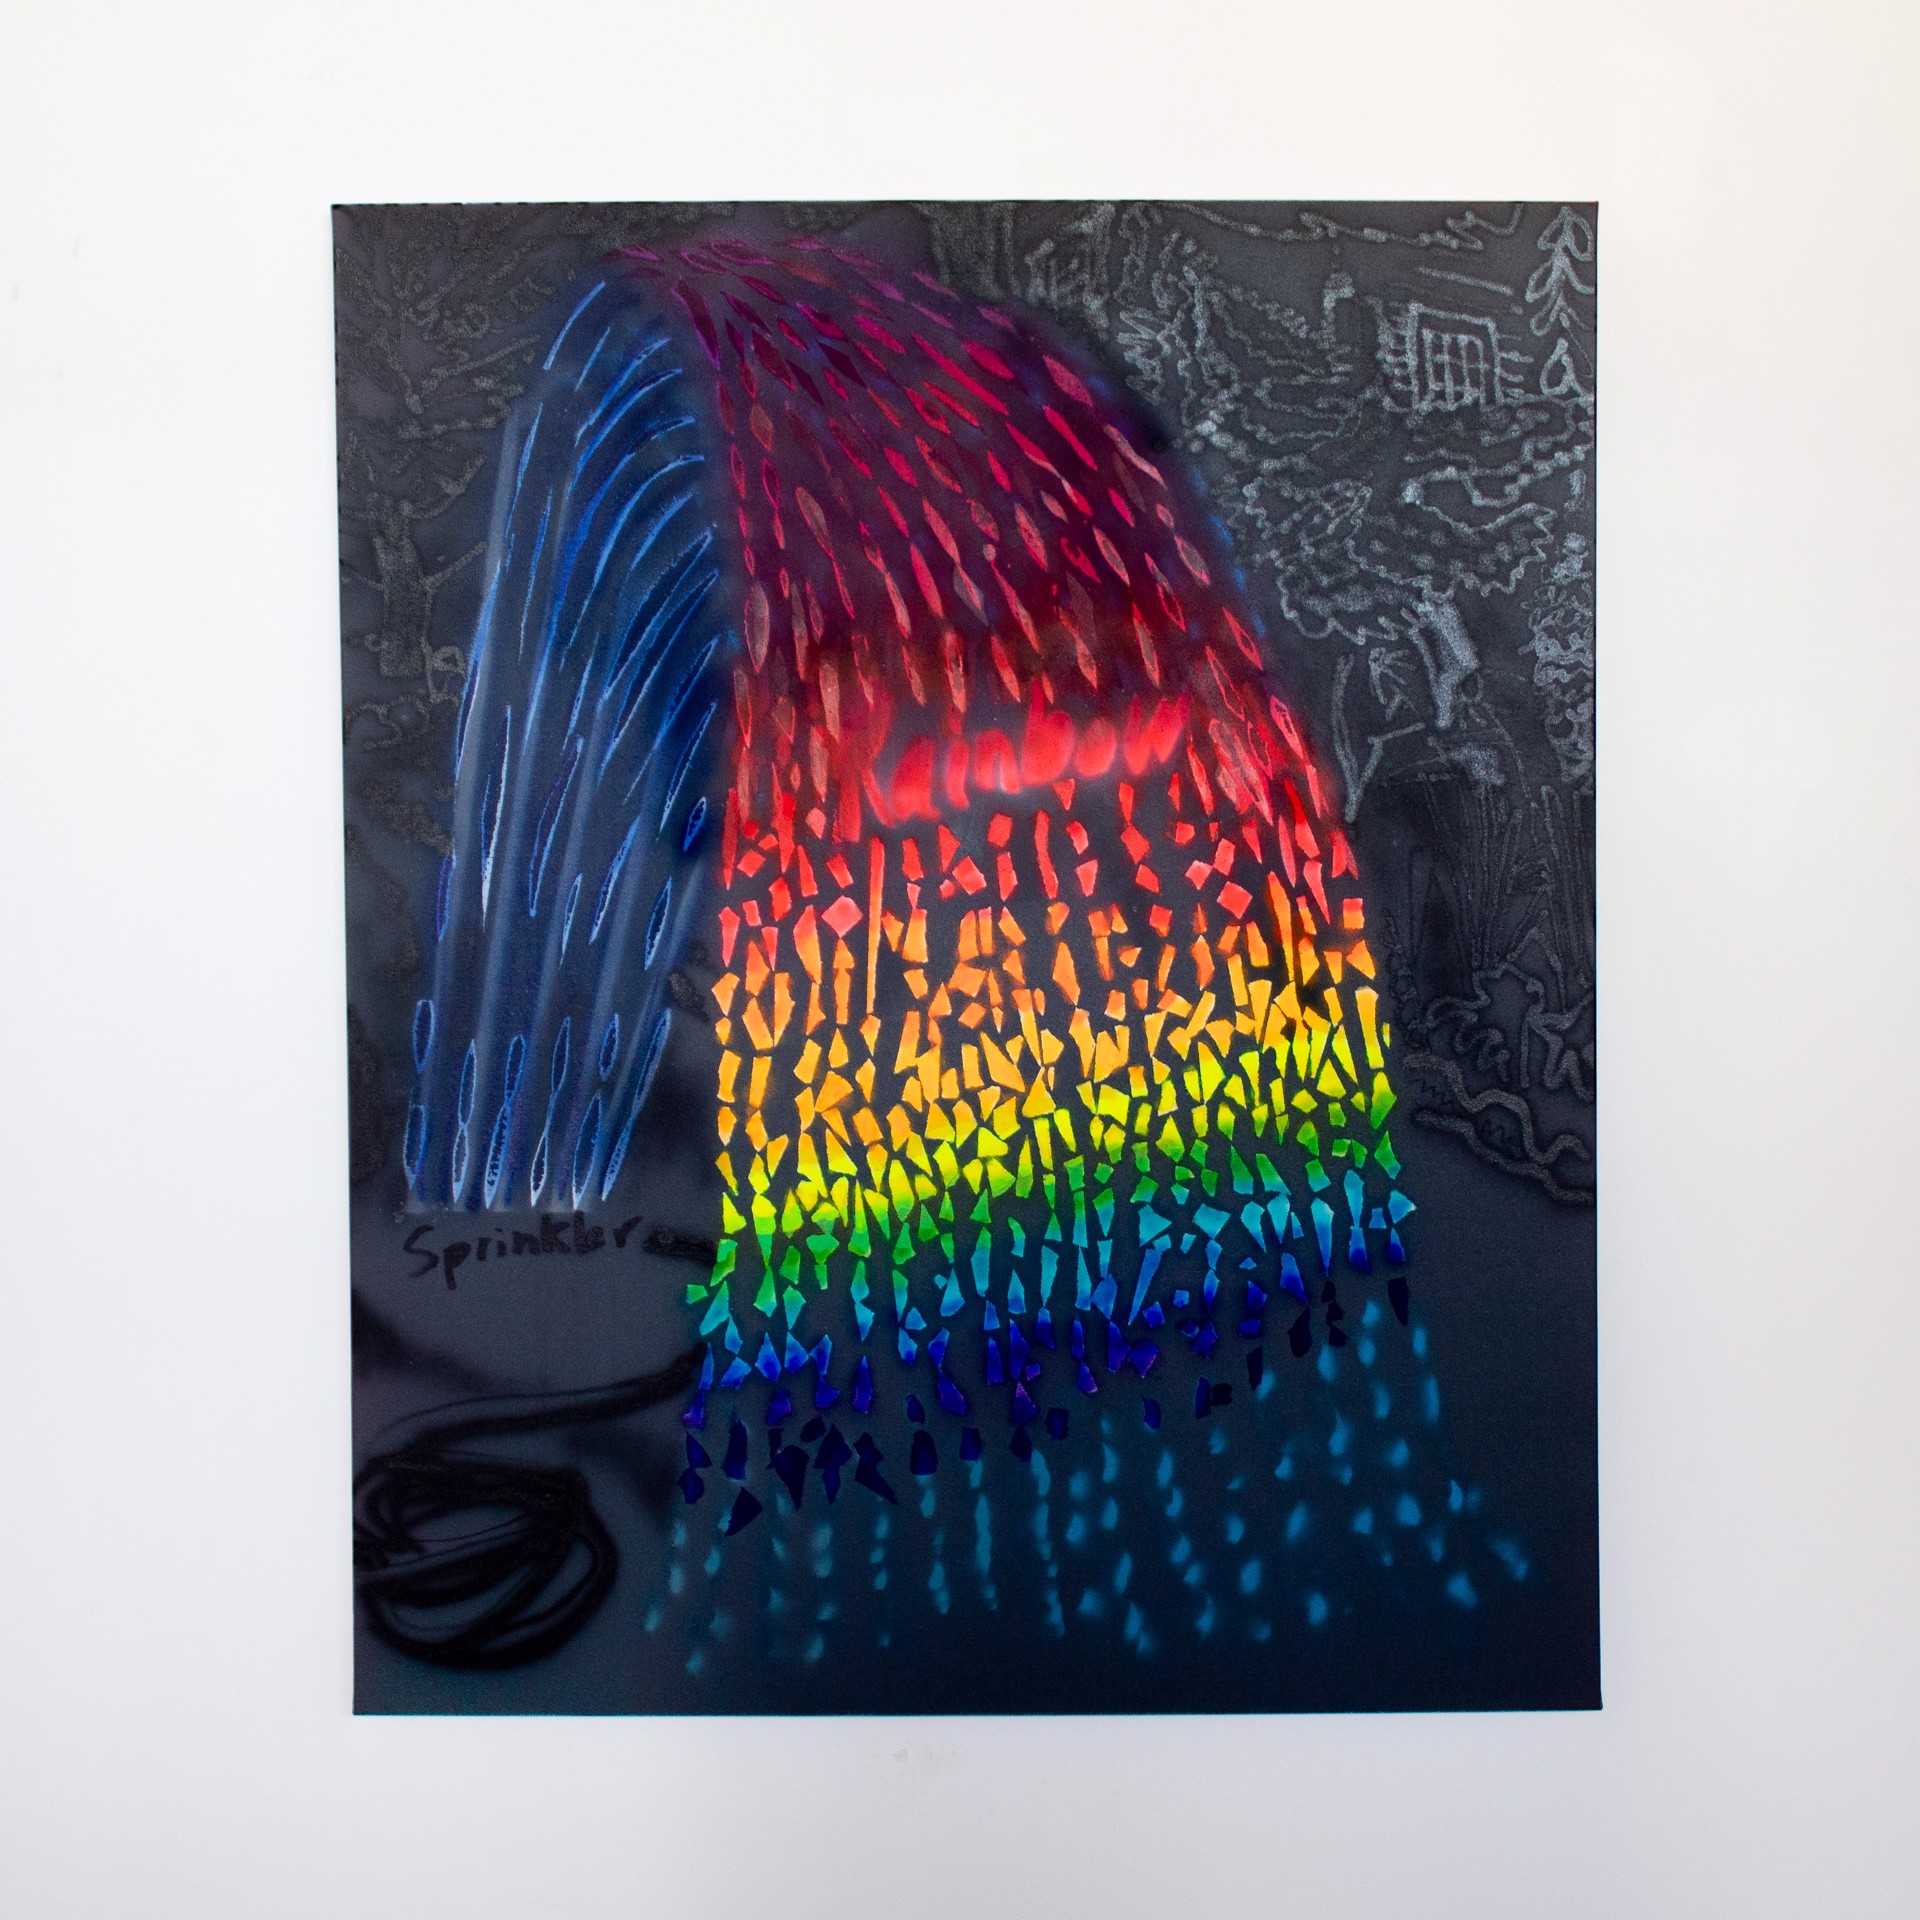 Sprinkler Rainbow by Paul Collins